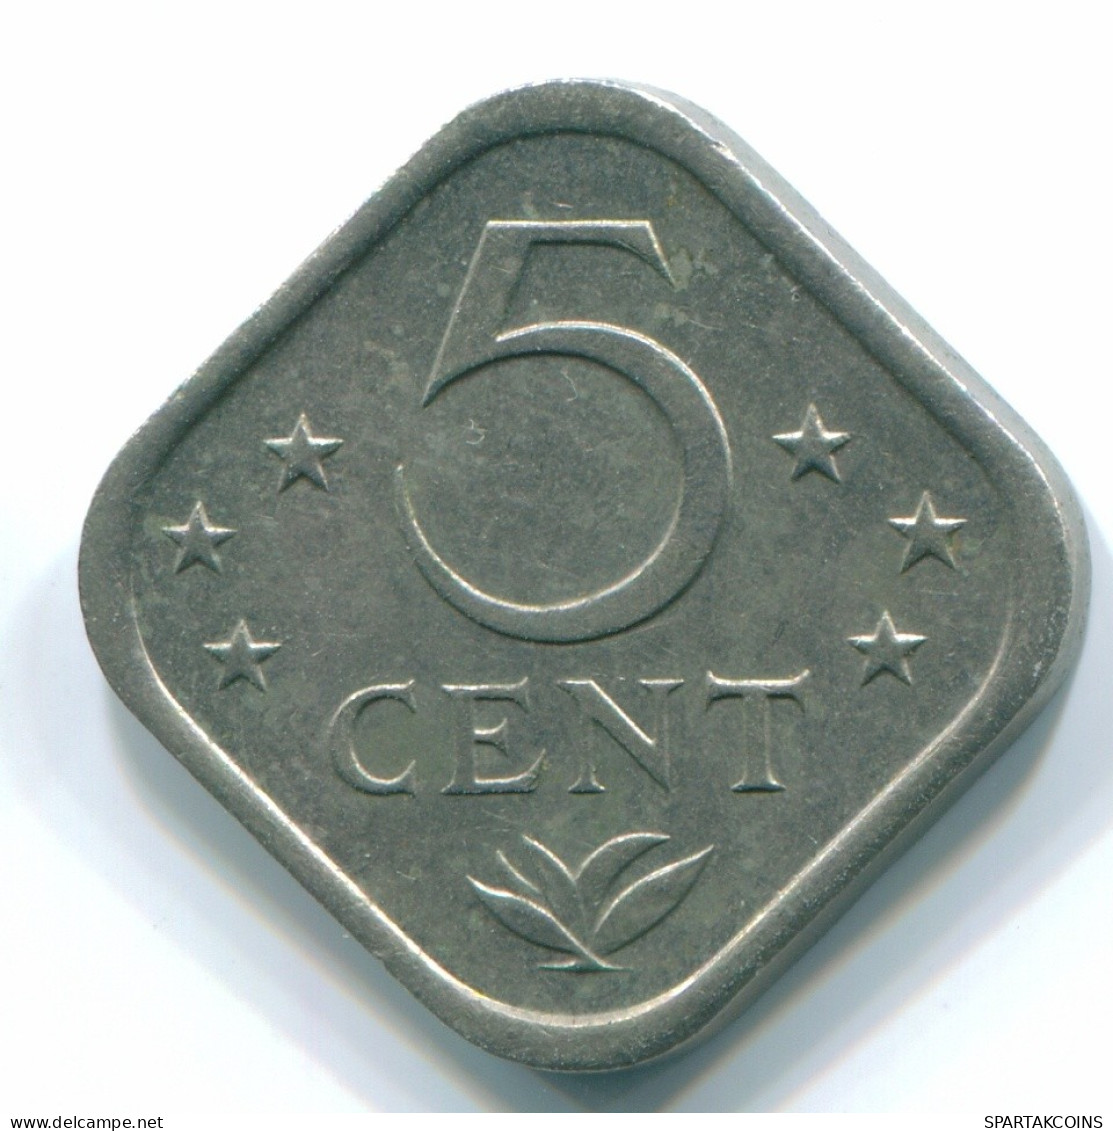 5 CENTS 1981 NETHERLANDS ANTILLES Nickel Colonial Coin #S12345.U.A - Niederländische Antillen